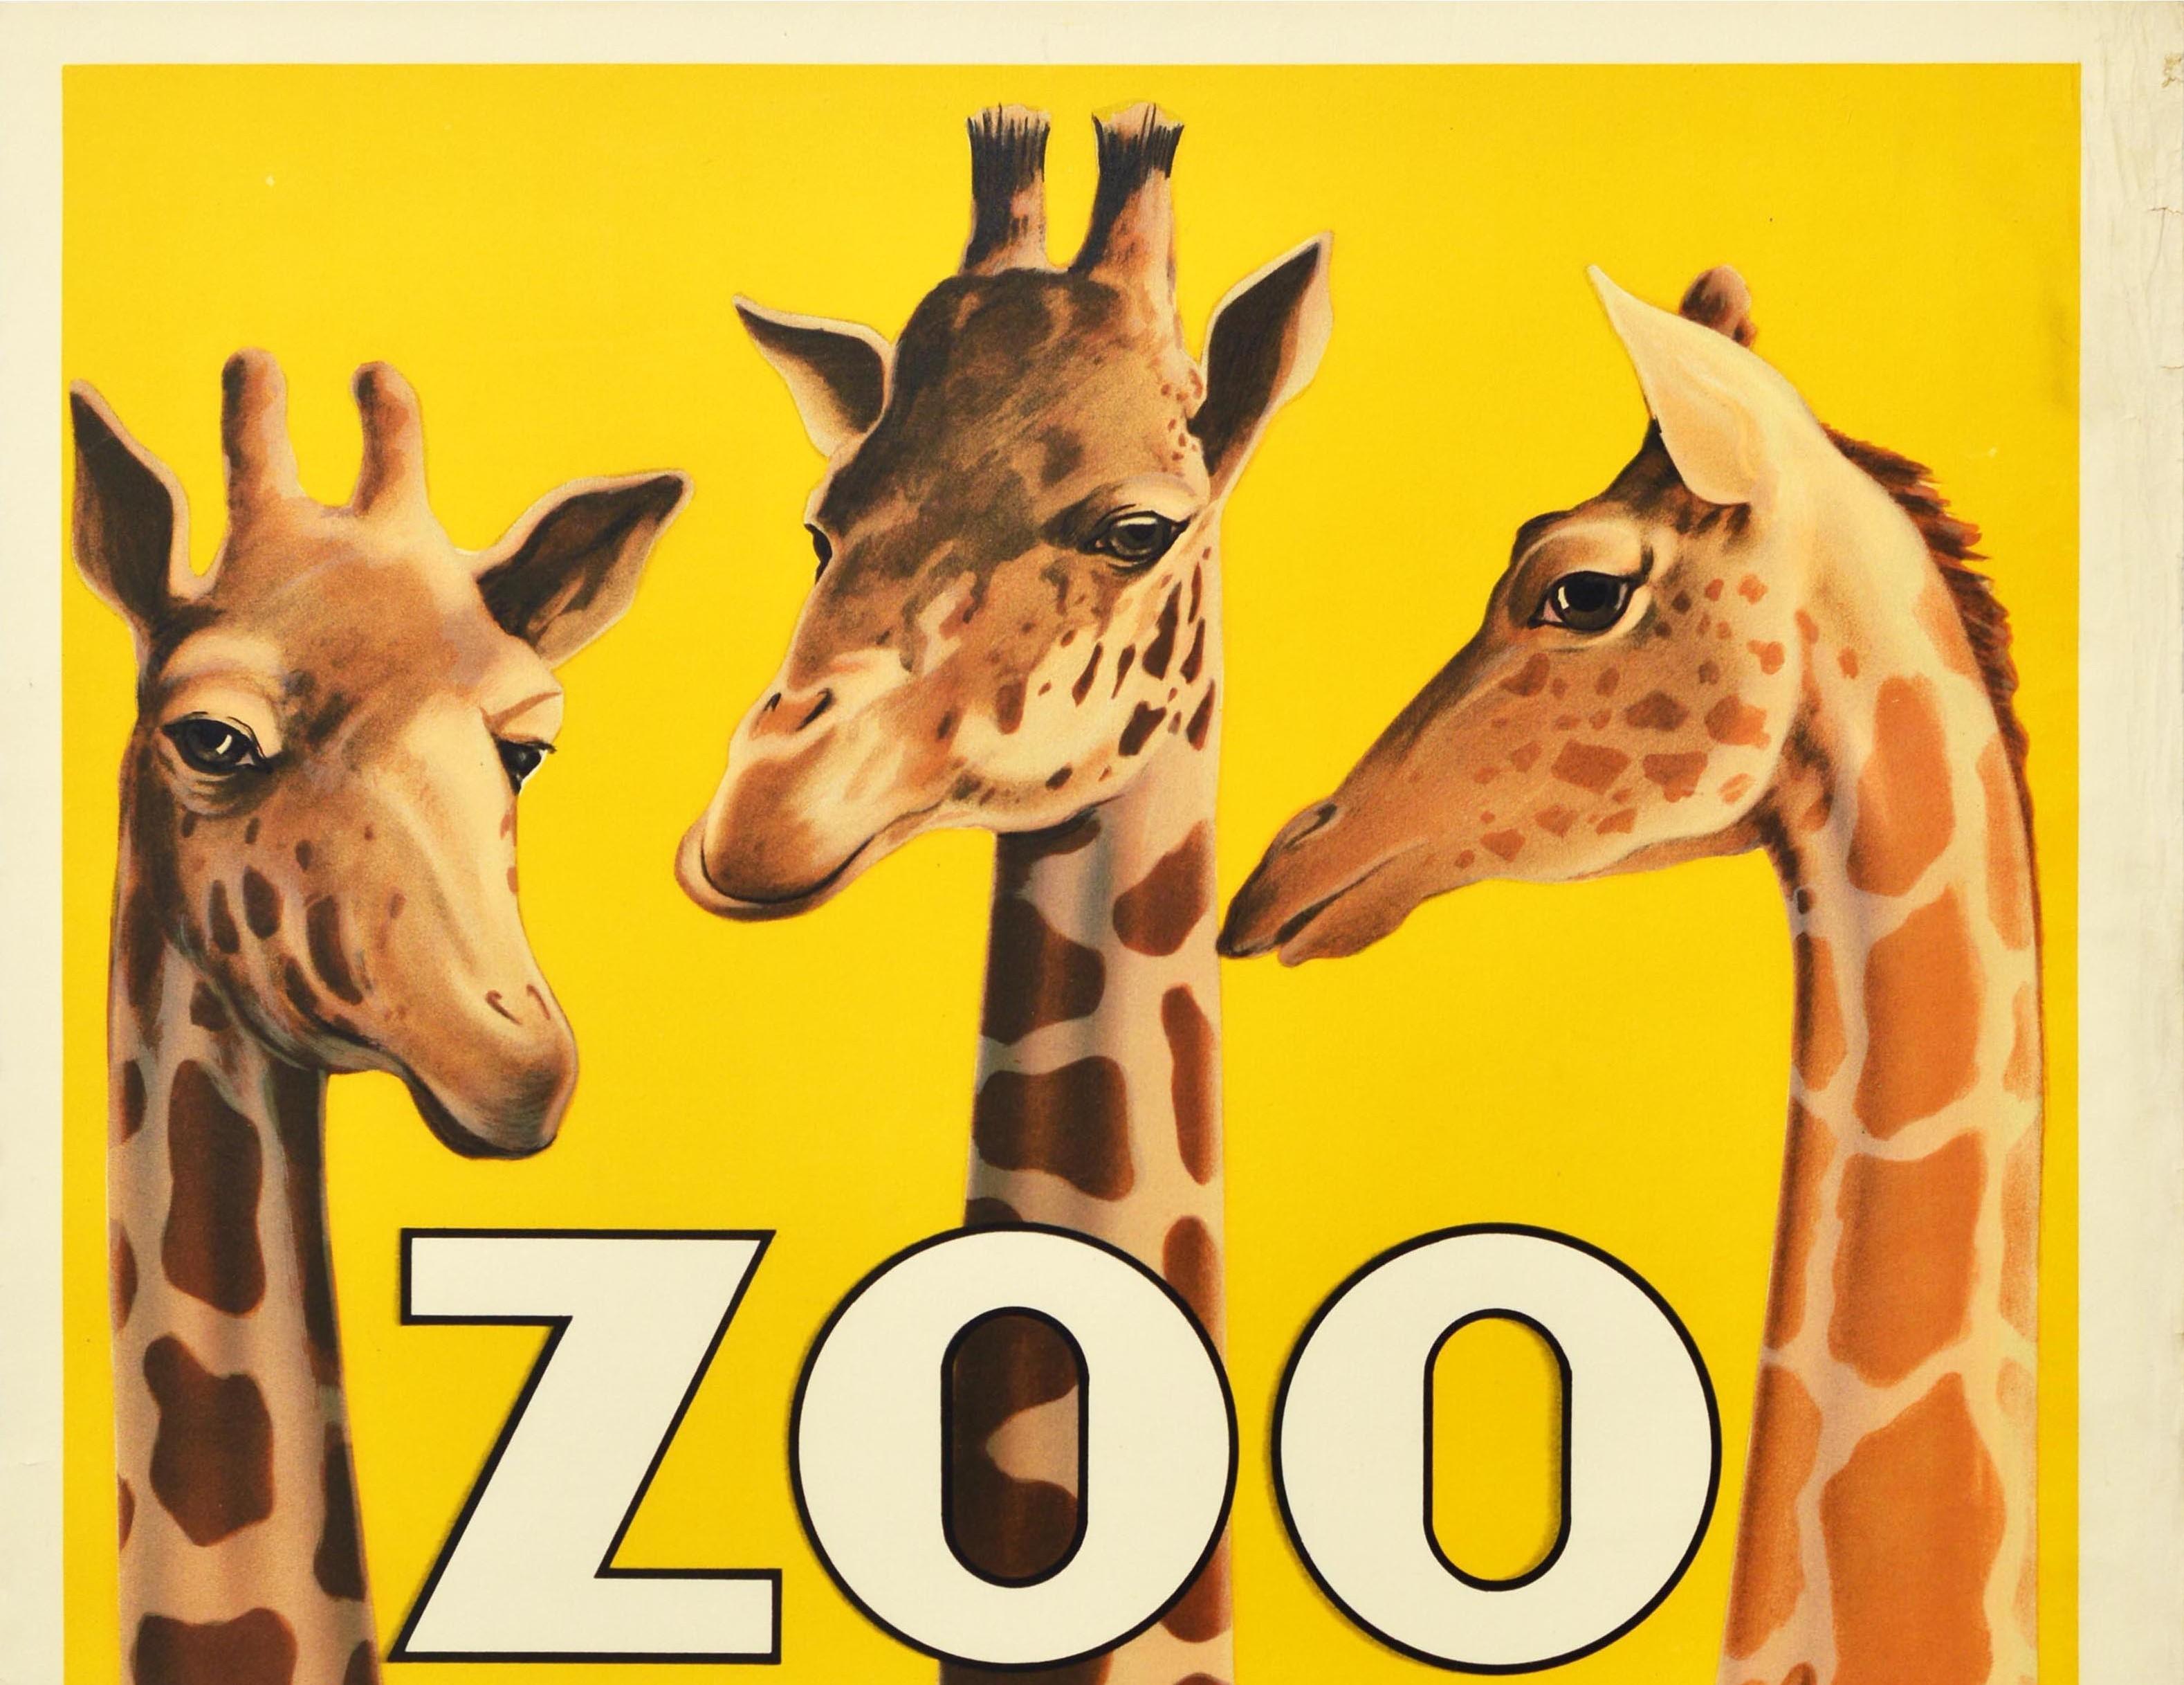 Original Vintage Advertising Poster For Copenhagen Zoo Denmark Giraffe Design - Print by Henry